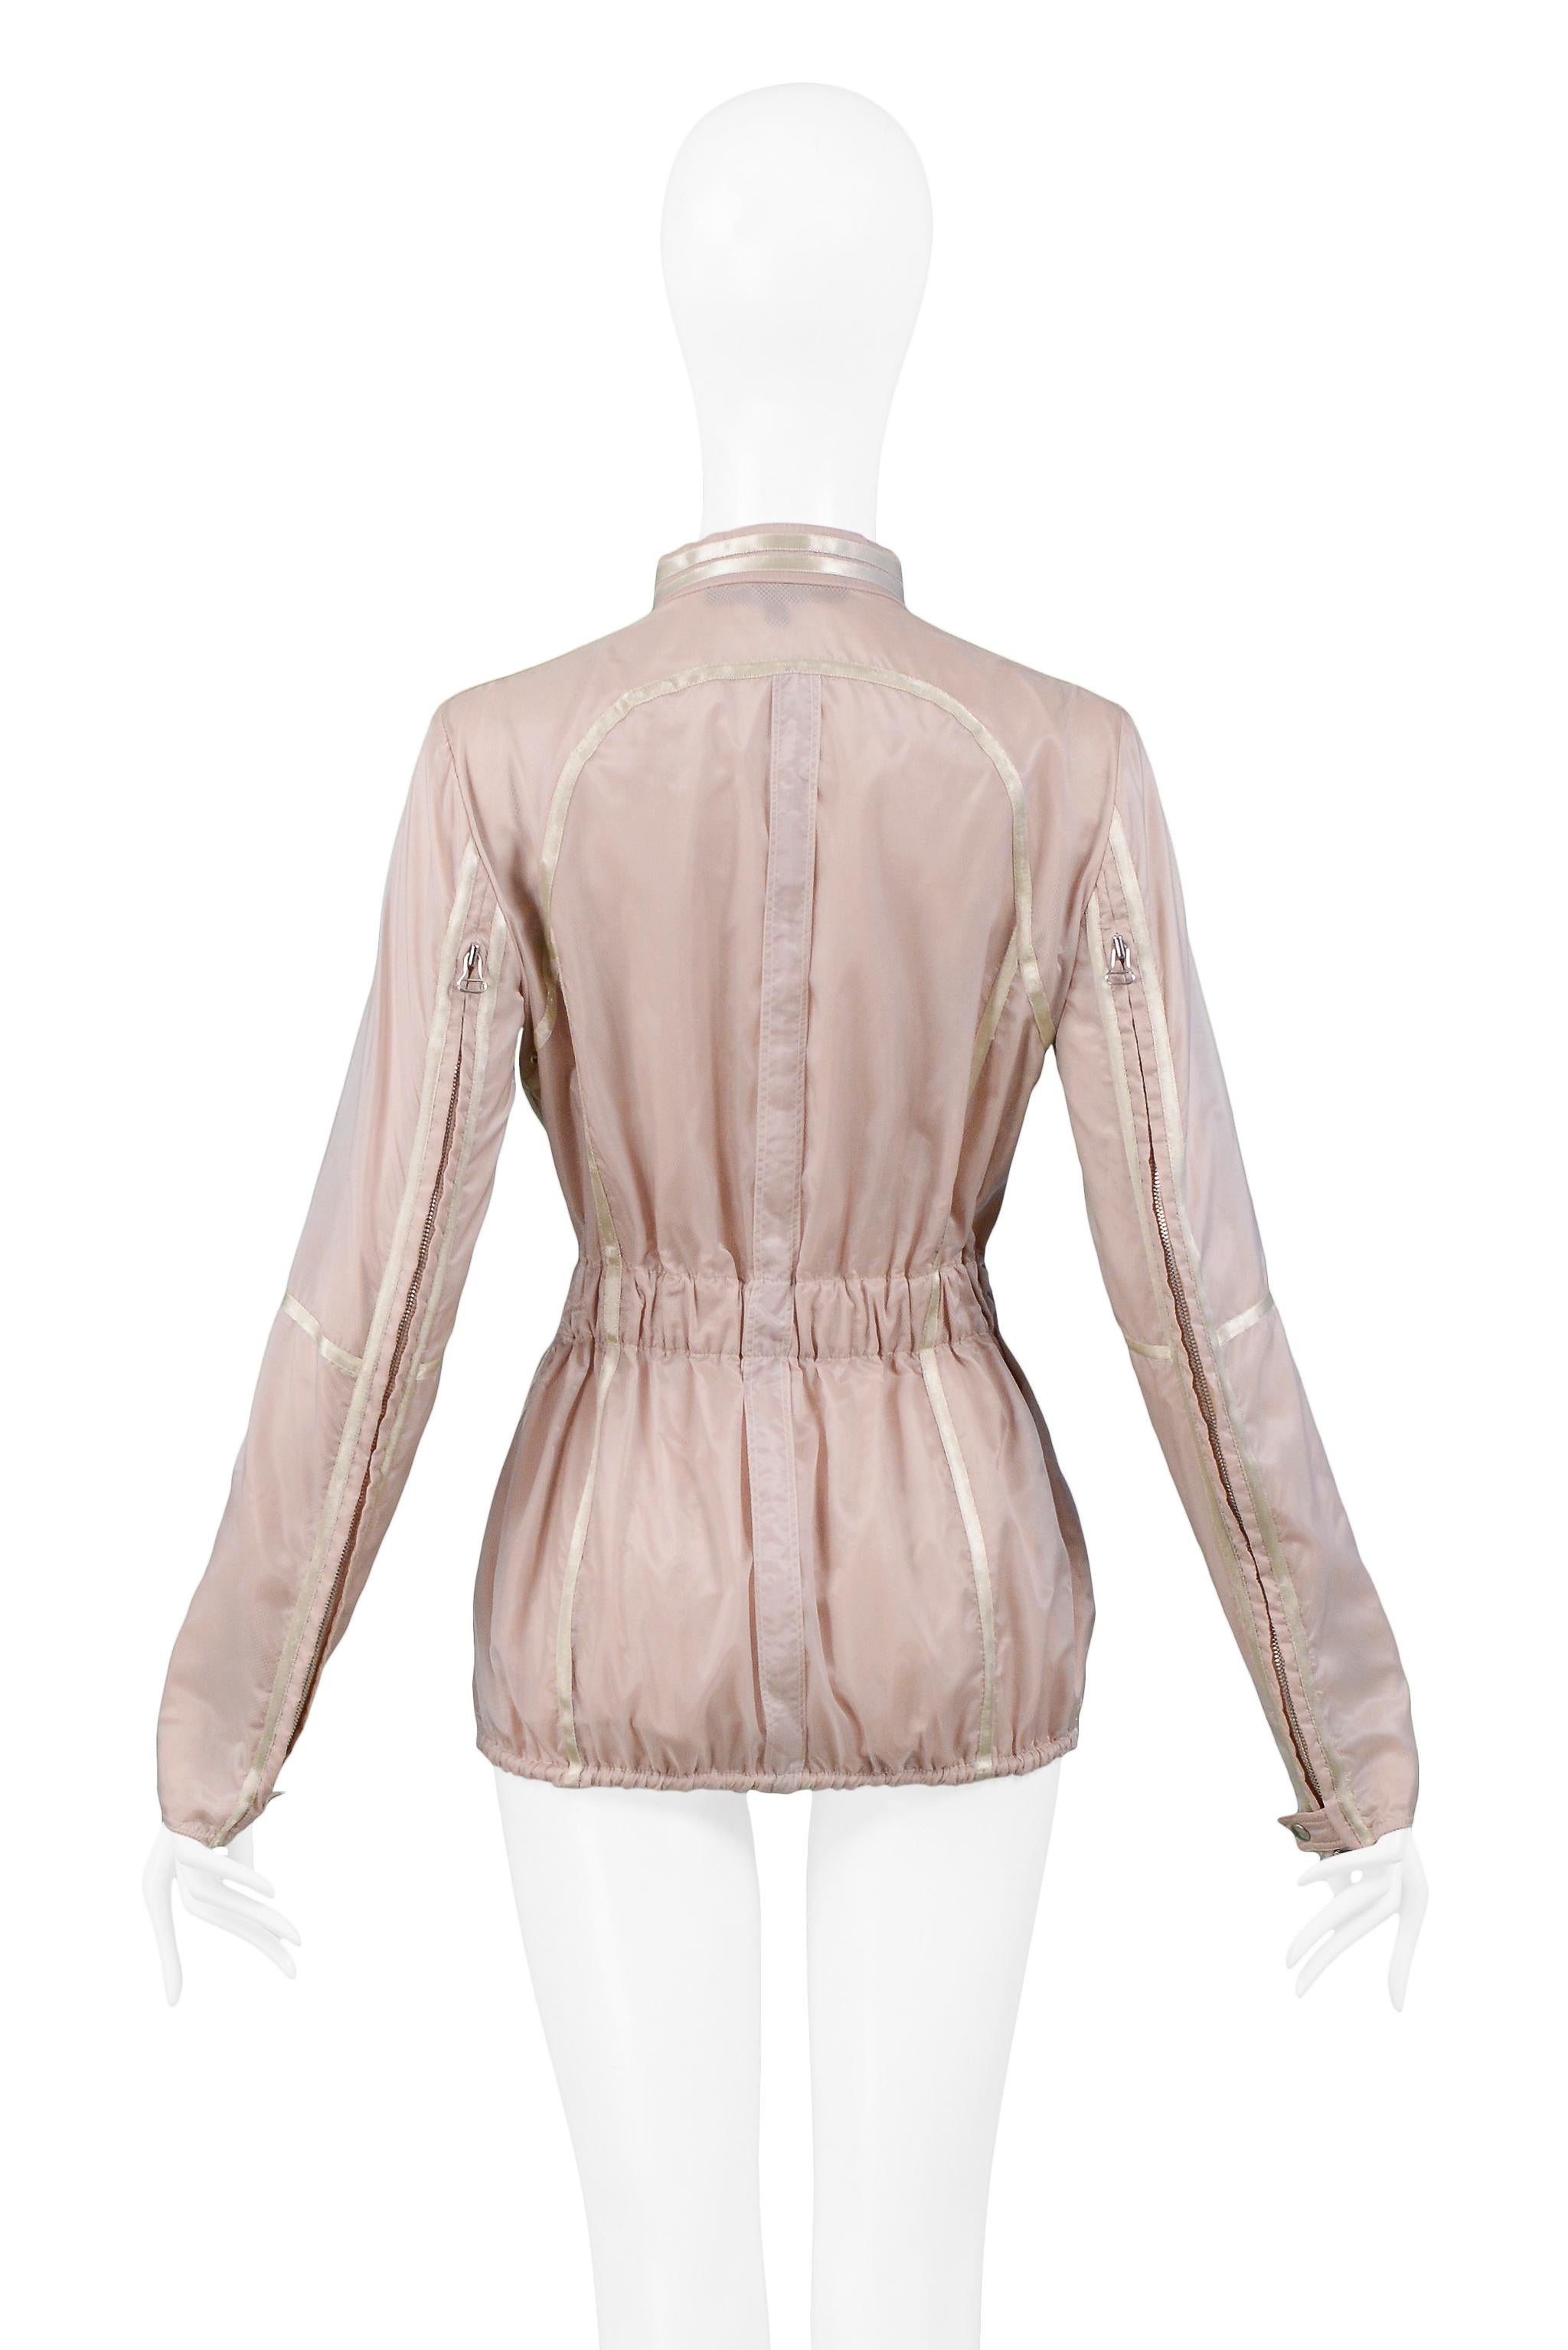 Women's Gianfranco Ferre Pink Nylon Windbreaker Jacket 2005 For Sale